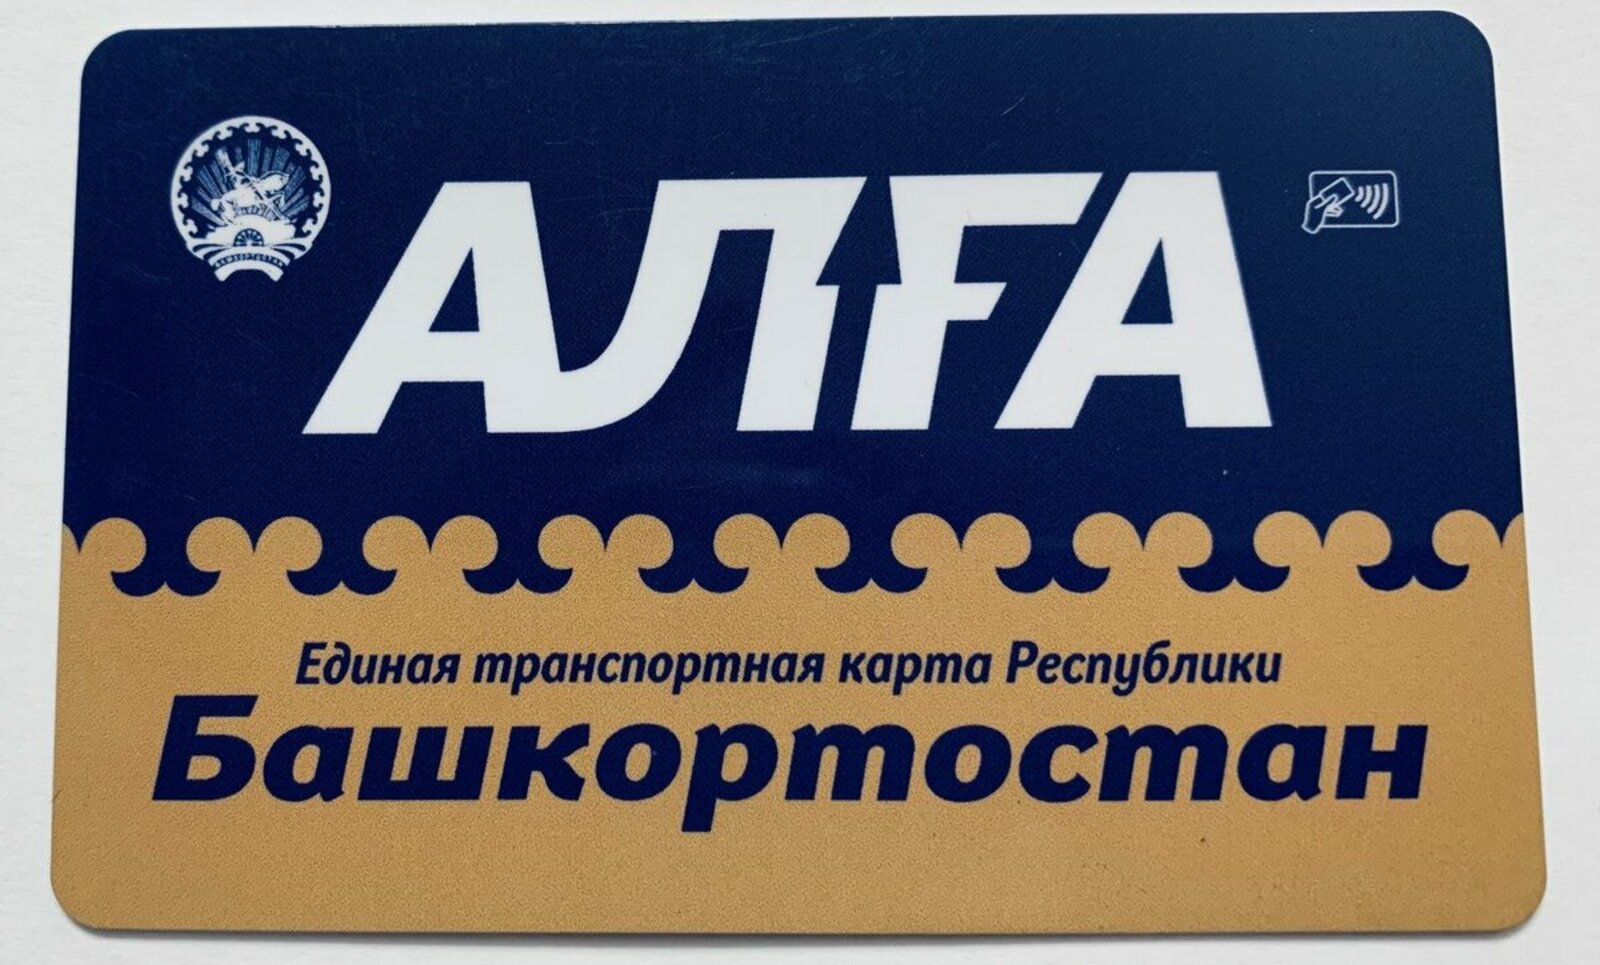 55 процентов пассажиров Башкирии оплачивают проезд с помощью карты «Алга»